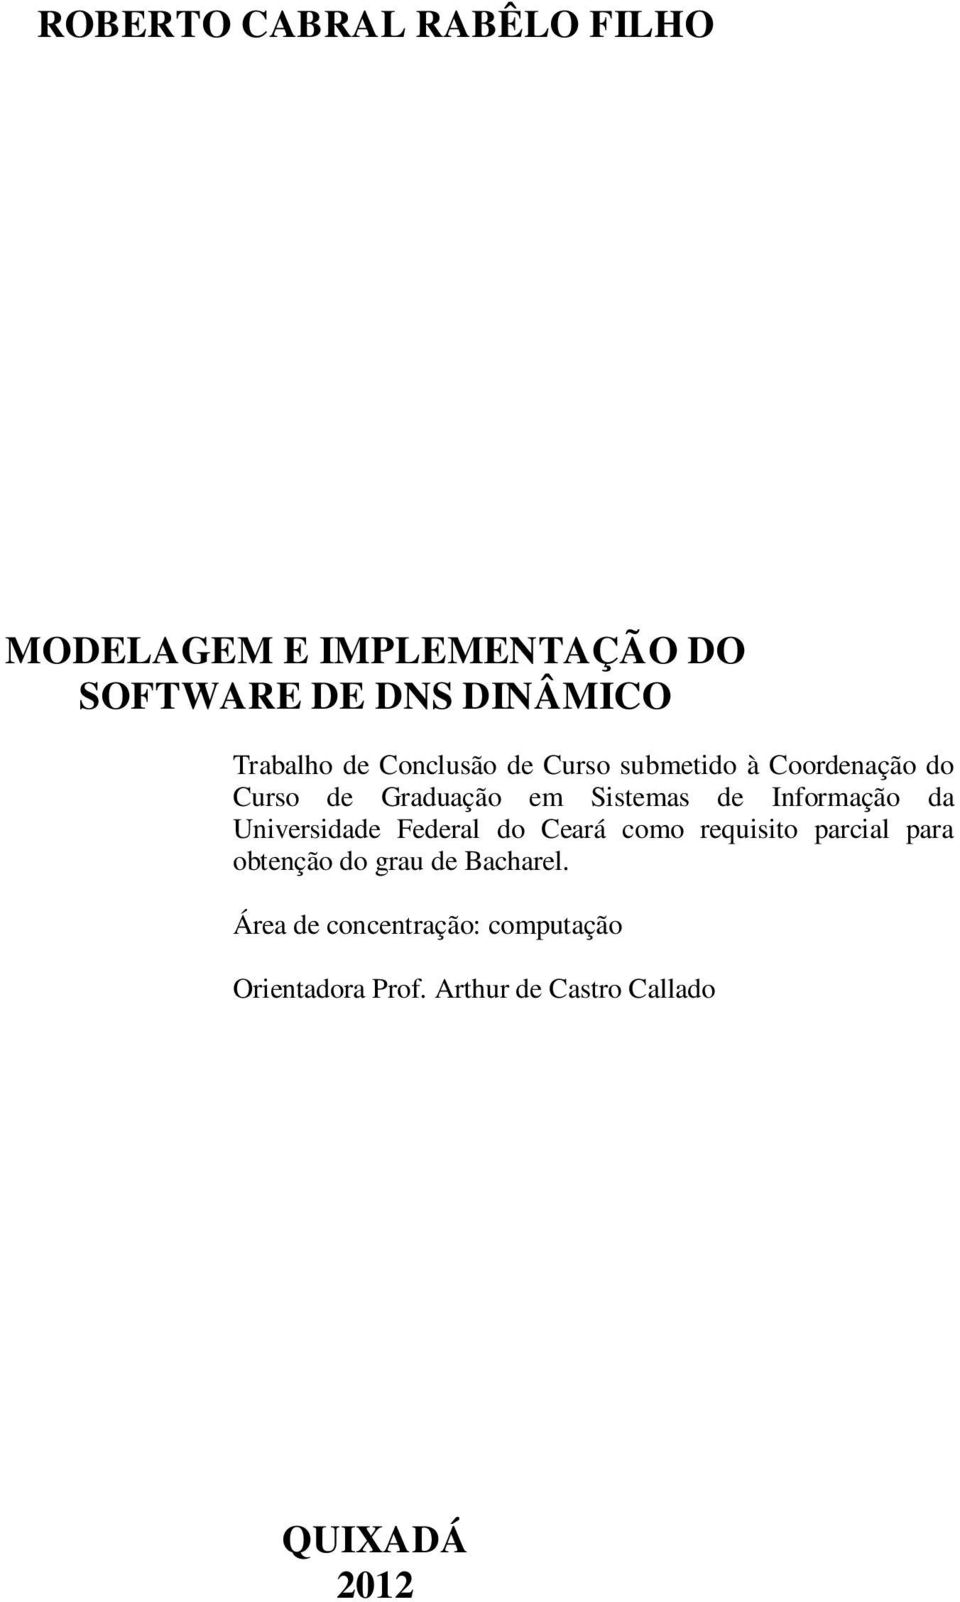 Informação da Universidade Federal do Ceará como requisito parcial para obtenção do grau